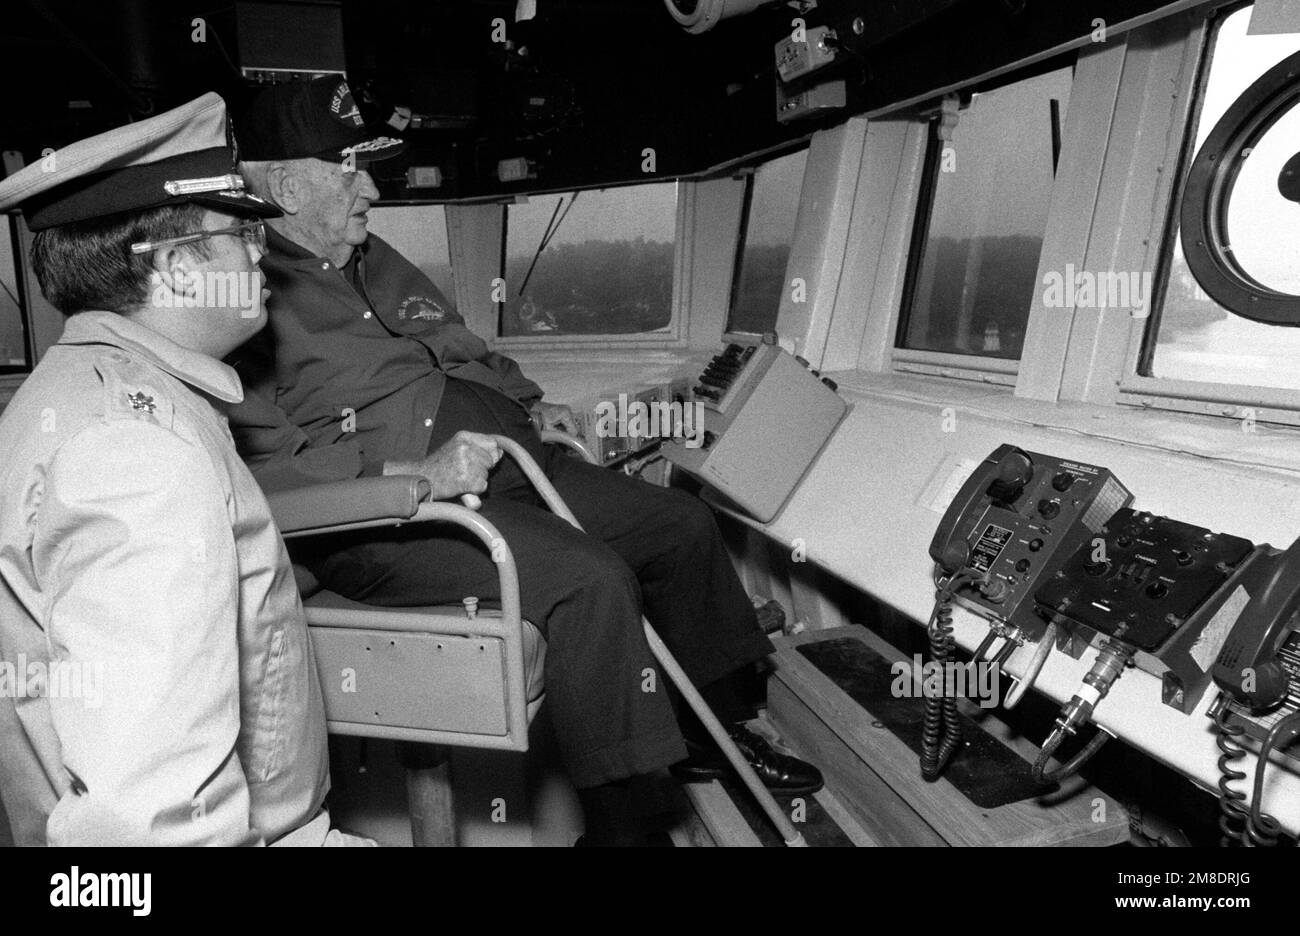 El almirante retirado Arleigh A. Burke, homónimo del destructor guiado de misiles ARLEIGH BURKE (DDG 51), y un oficial miran desde el puente durante las pruebas de mar del barco frente a la costa de Maine. El ARLEIGH BURKE es uno de los pocos barcos que ha sido nombrado por una persona viva. País: Océano Atlántico (AOC) Foto de stock